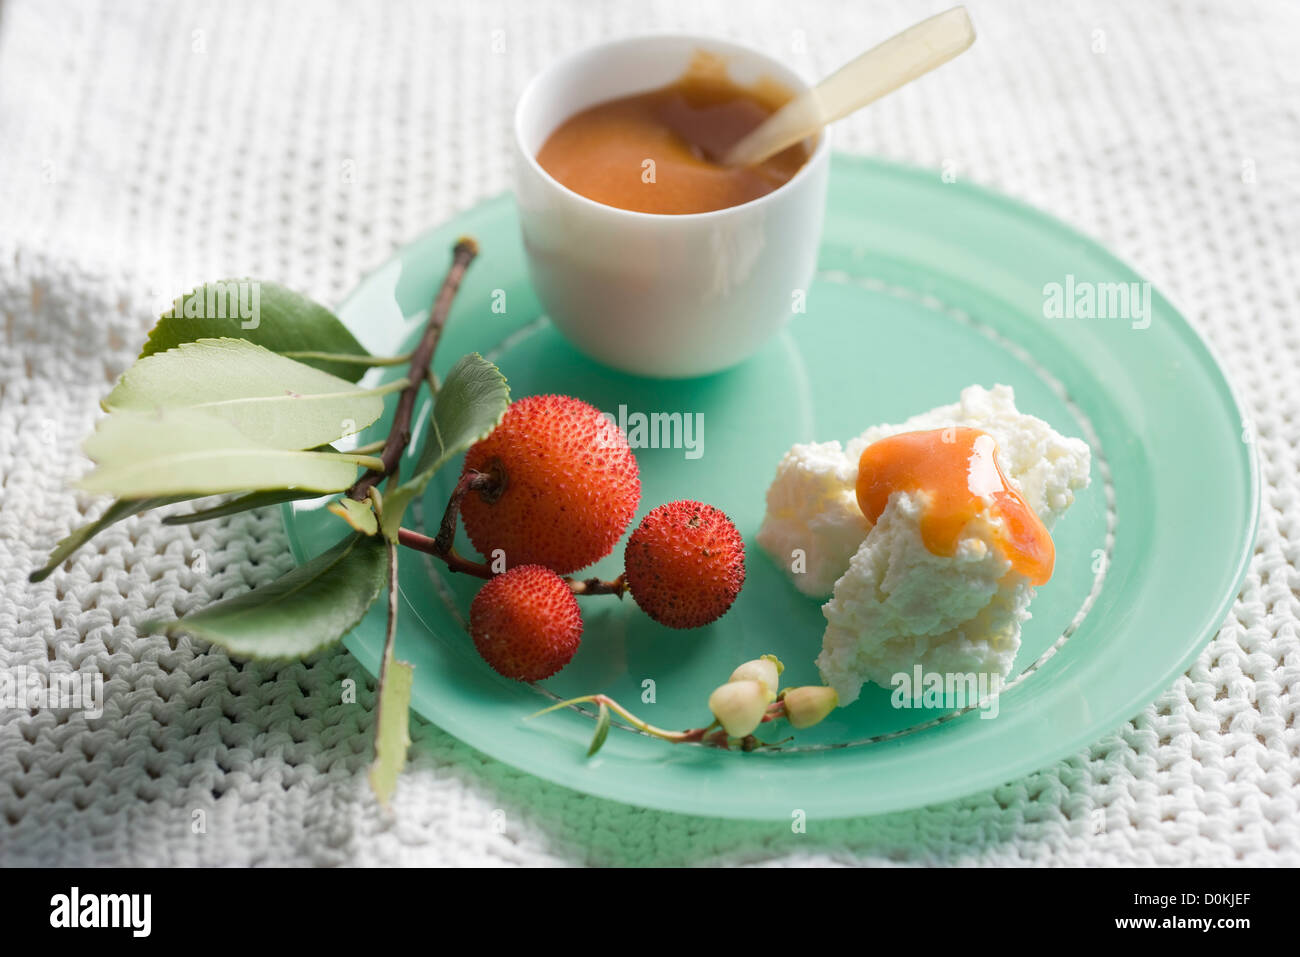 Arbutus berry jam Stock Photo